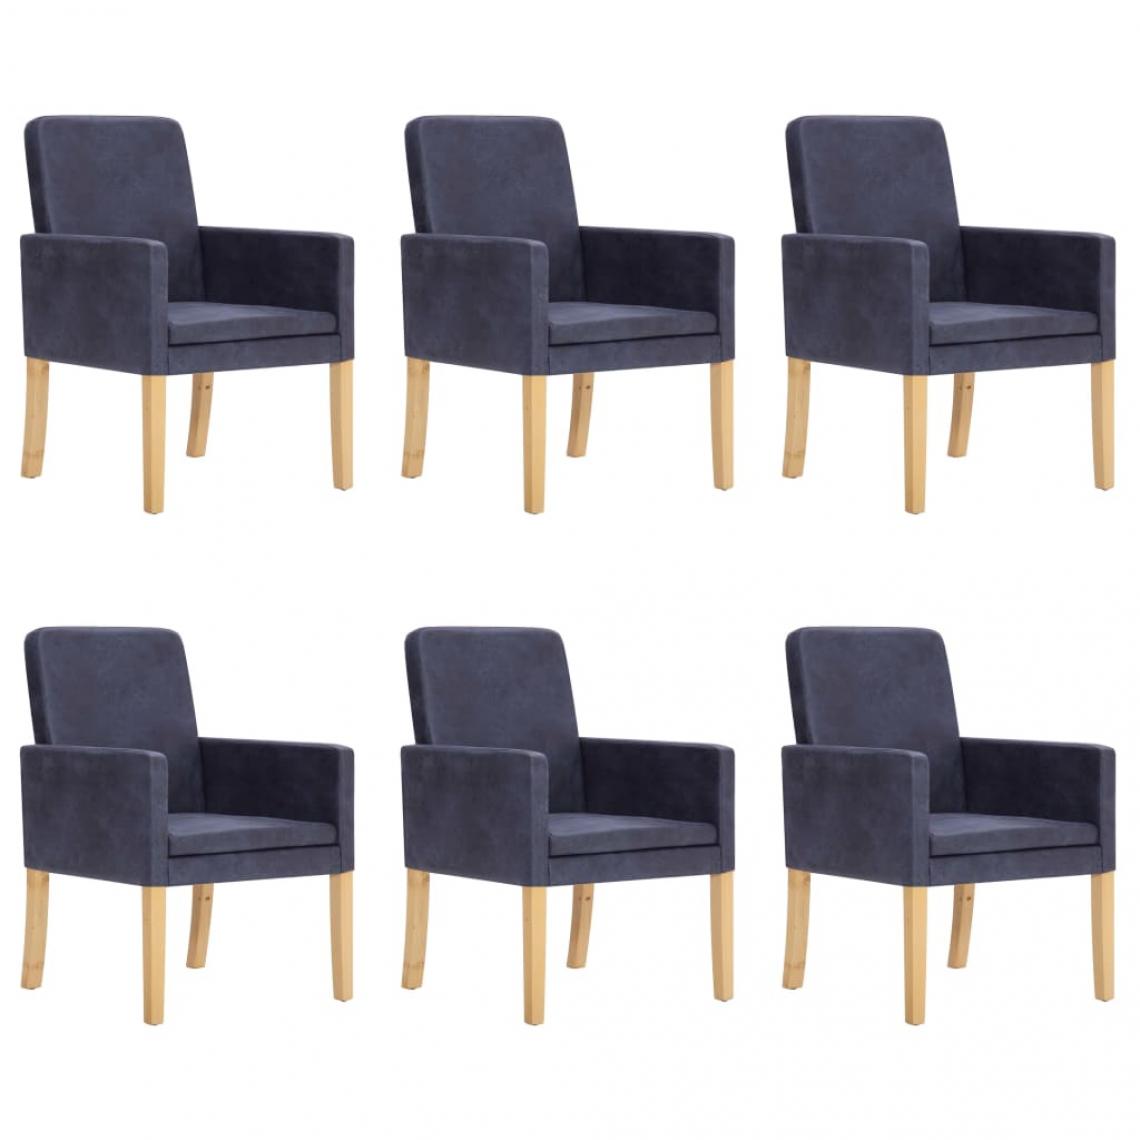 Decoshop26 - Lot de 6 chaises de salle à manger cuisine design moderne similicuir daim gris CDS022497 - Chaises